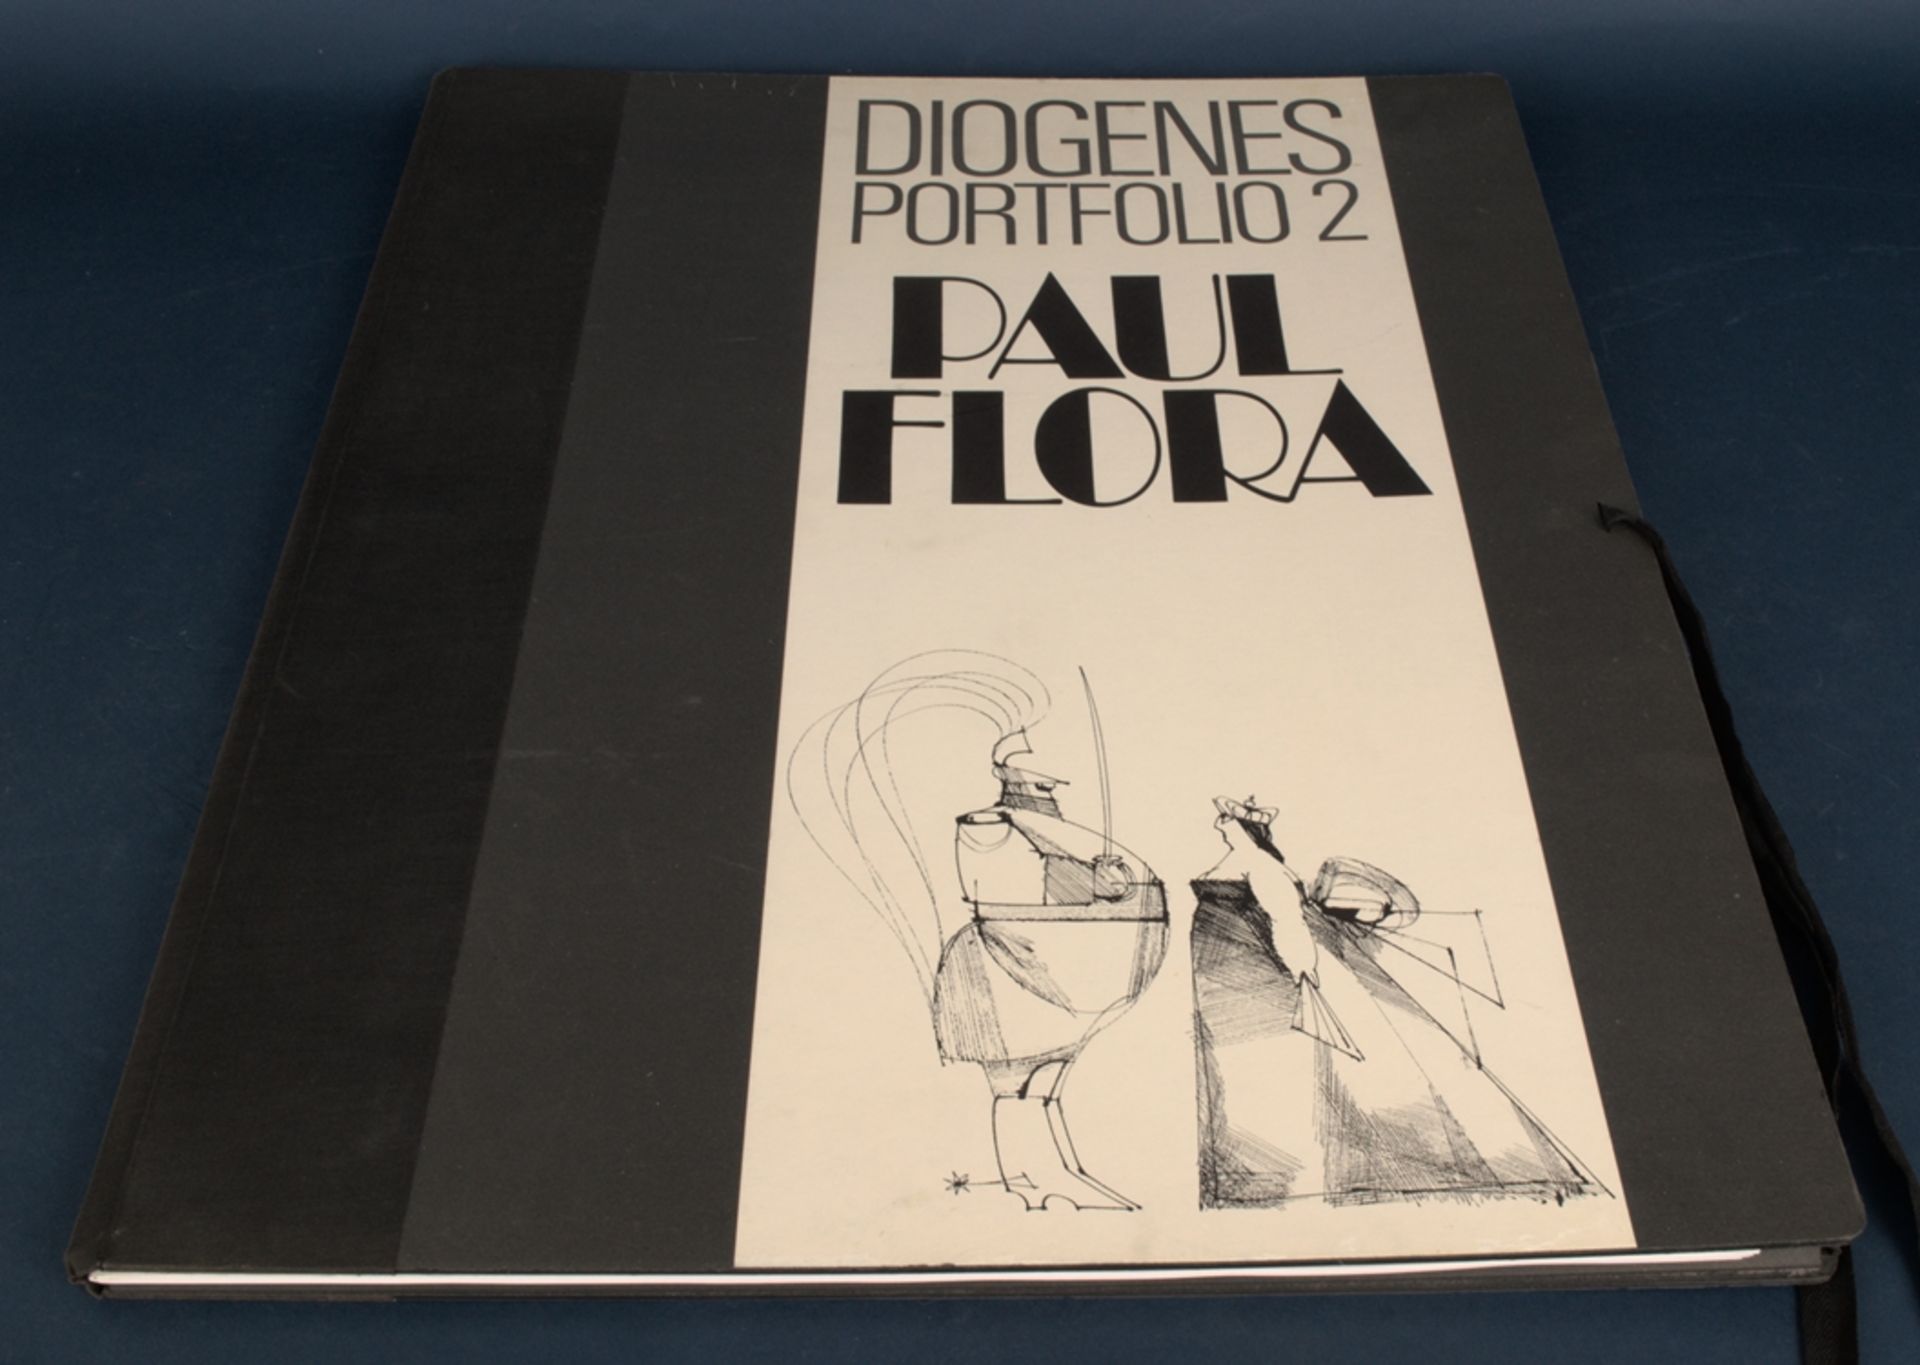 "DIOGENES PORTFOLIO II" - in limitierter Auflage erschienenes Mappenwerk des Paul Flora (1922 -